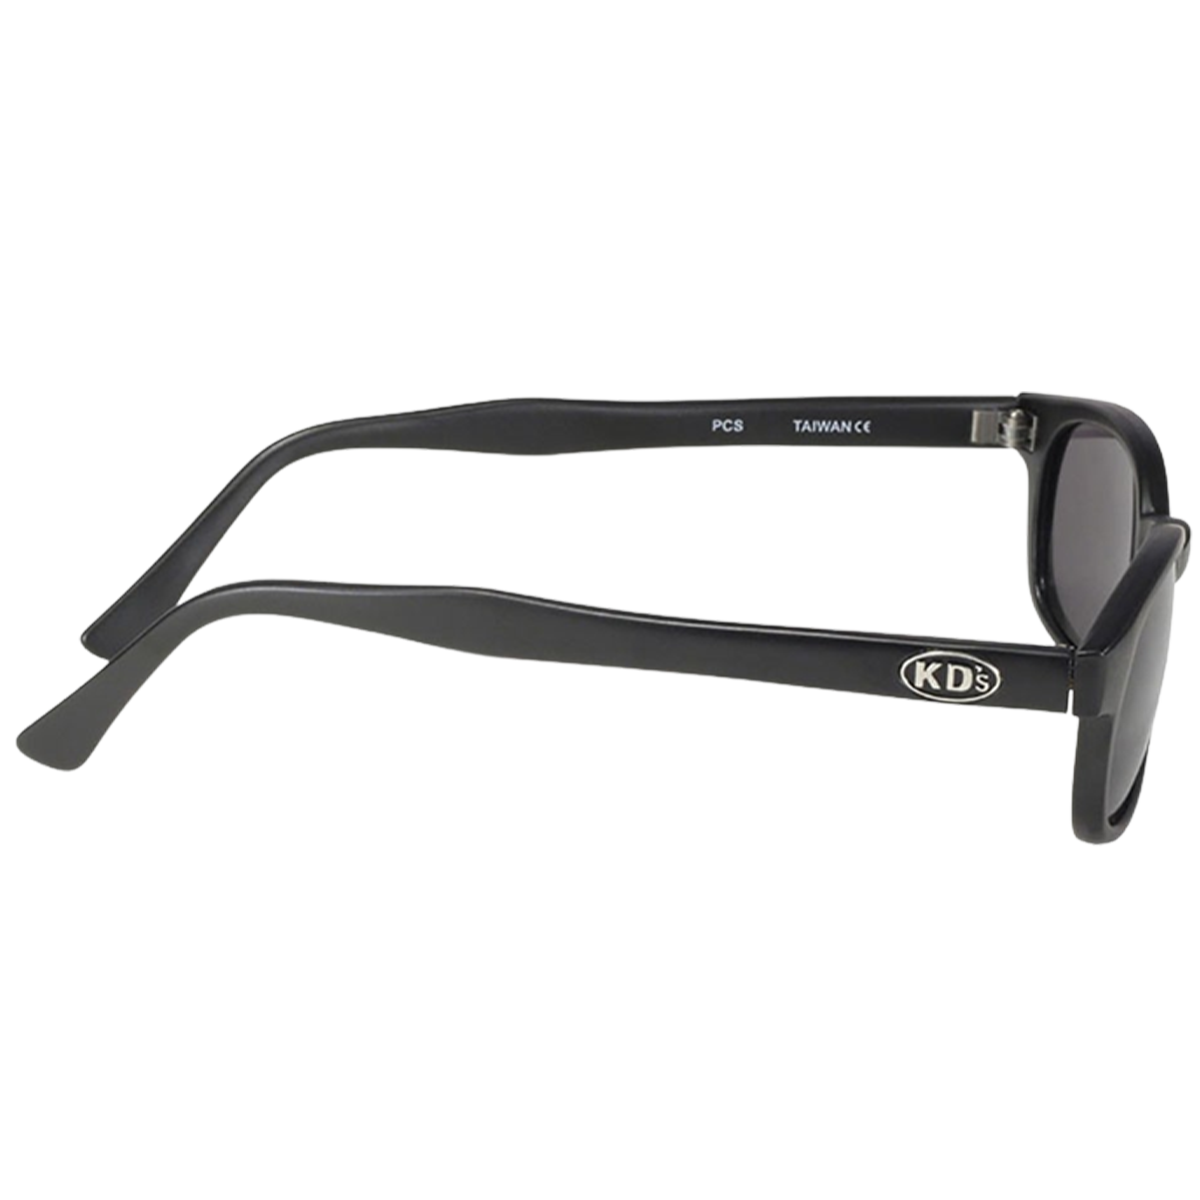 Sunglasses KD's 20019 - polarized gray lenses - matte black frame